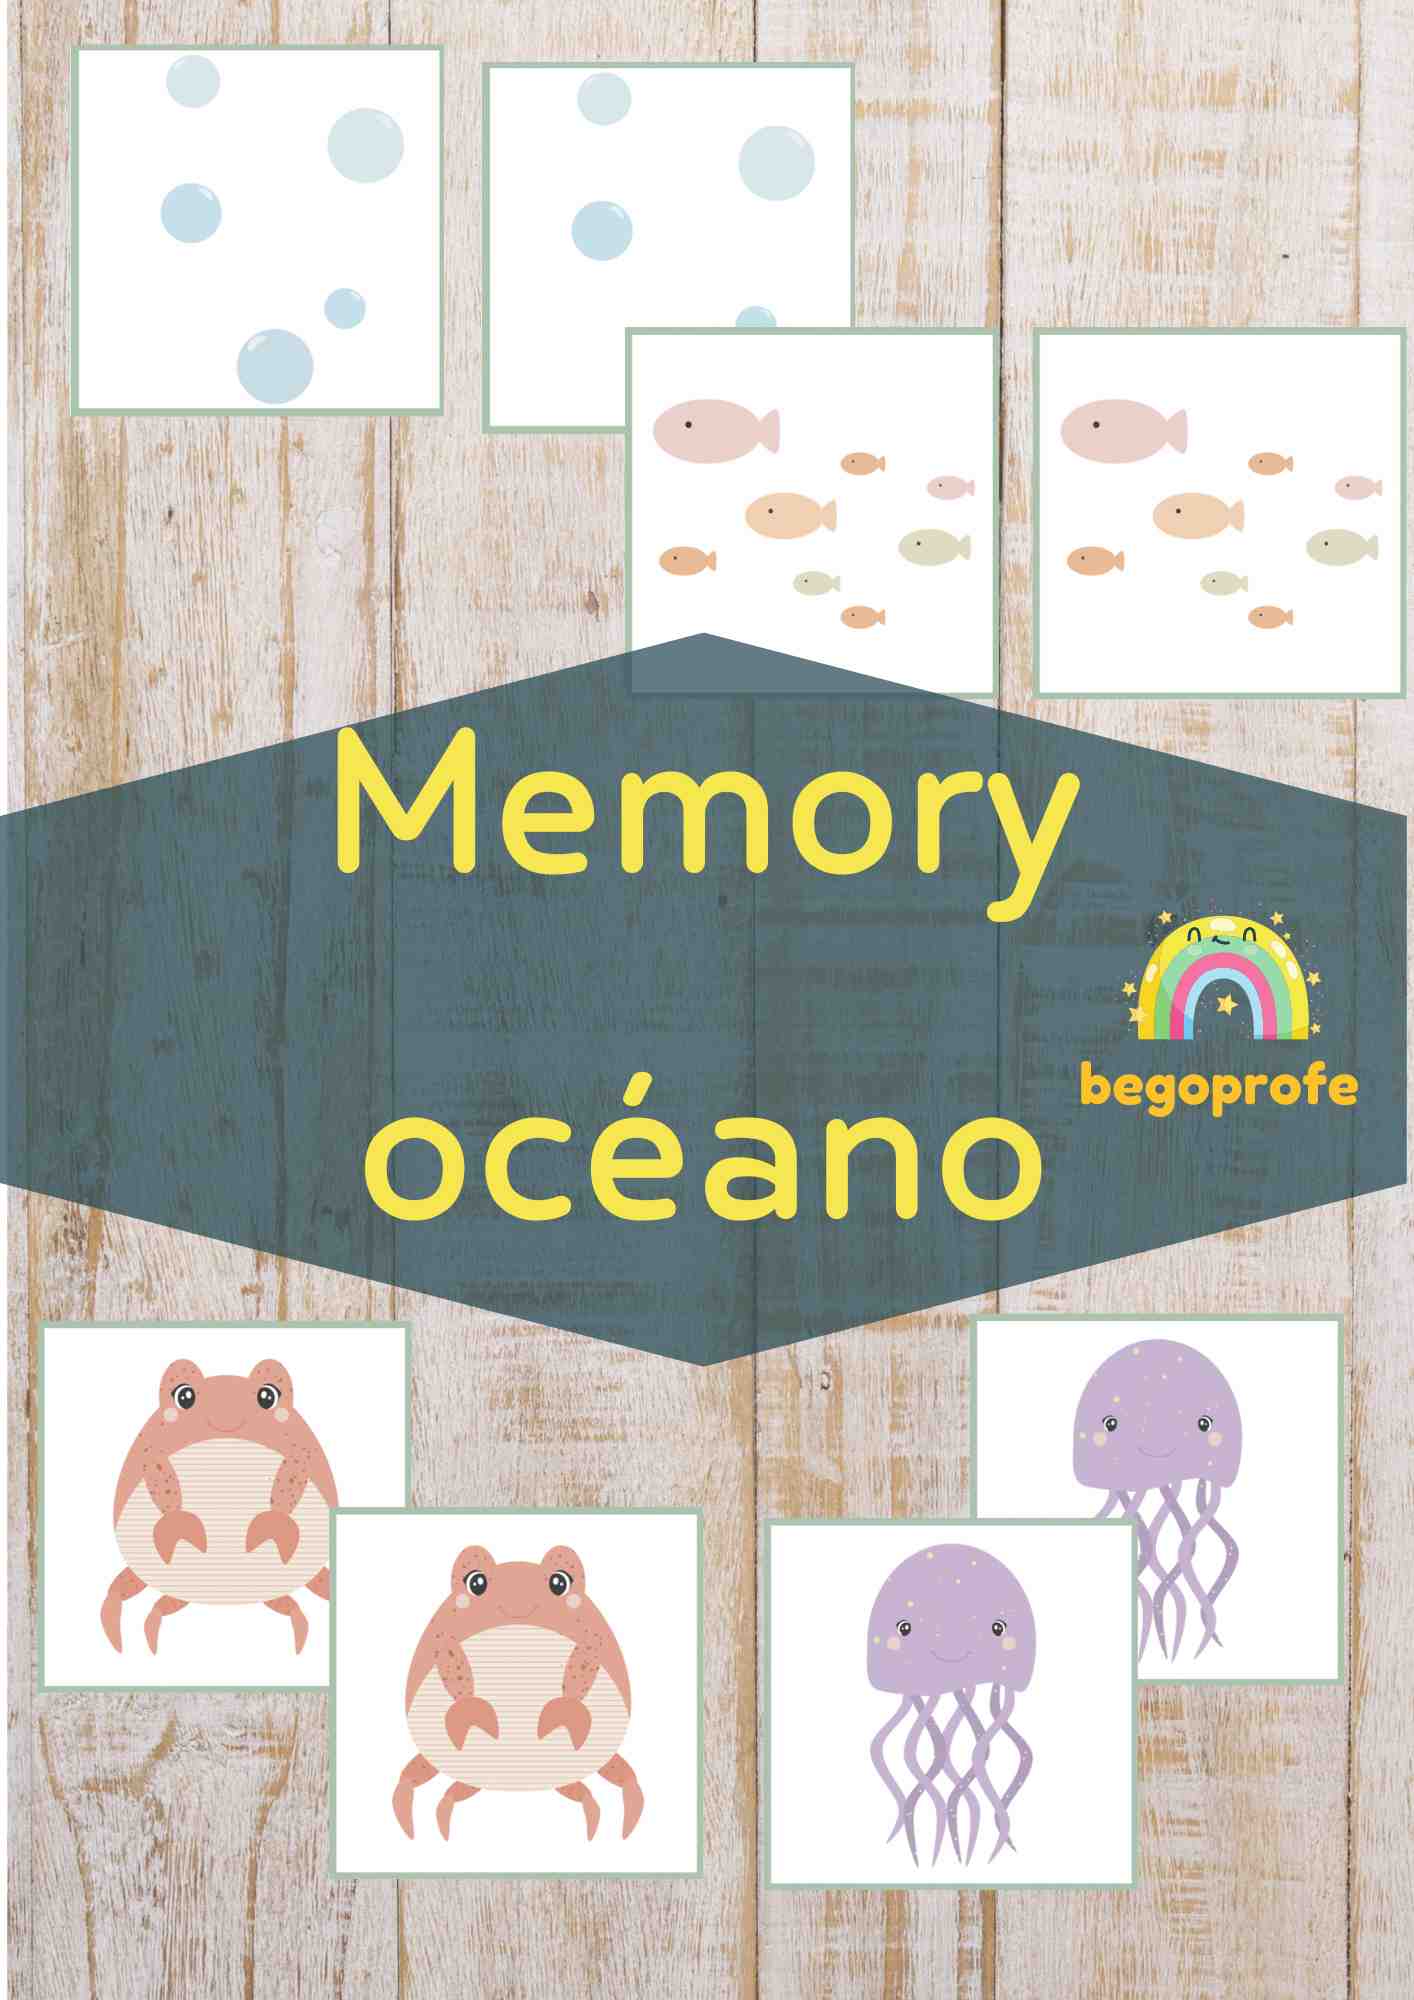 Memory océano